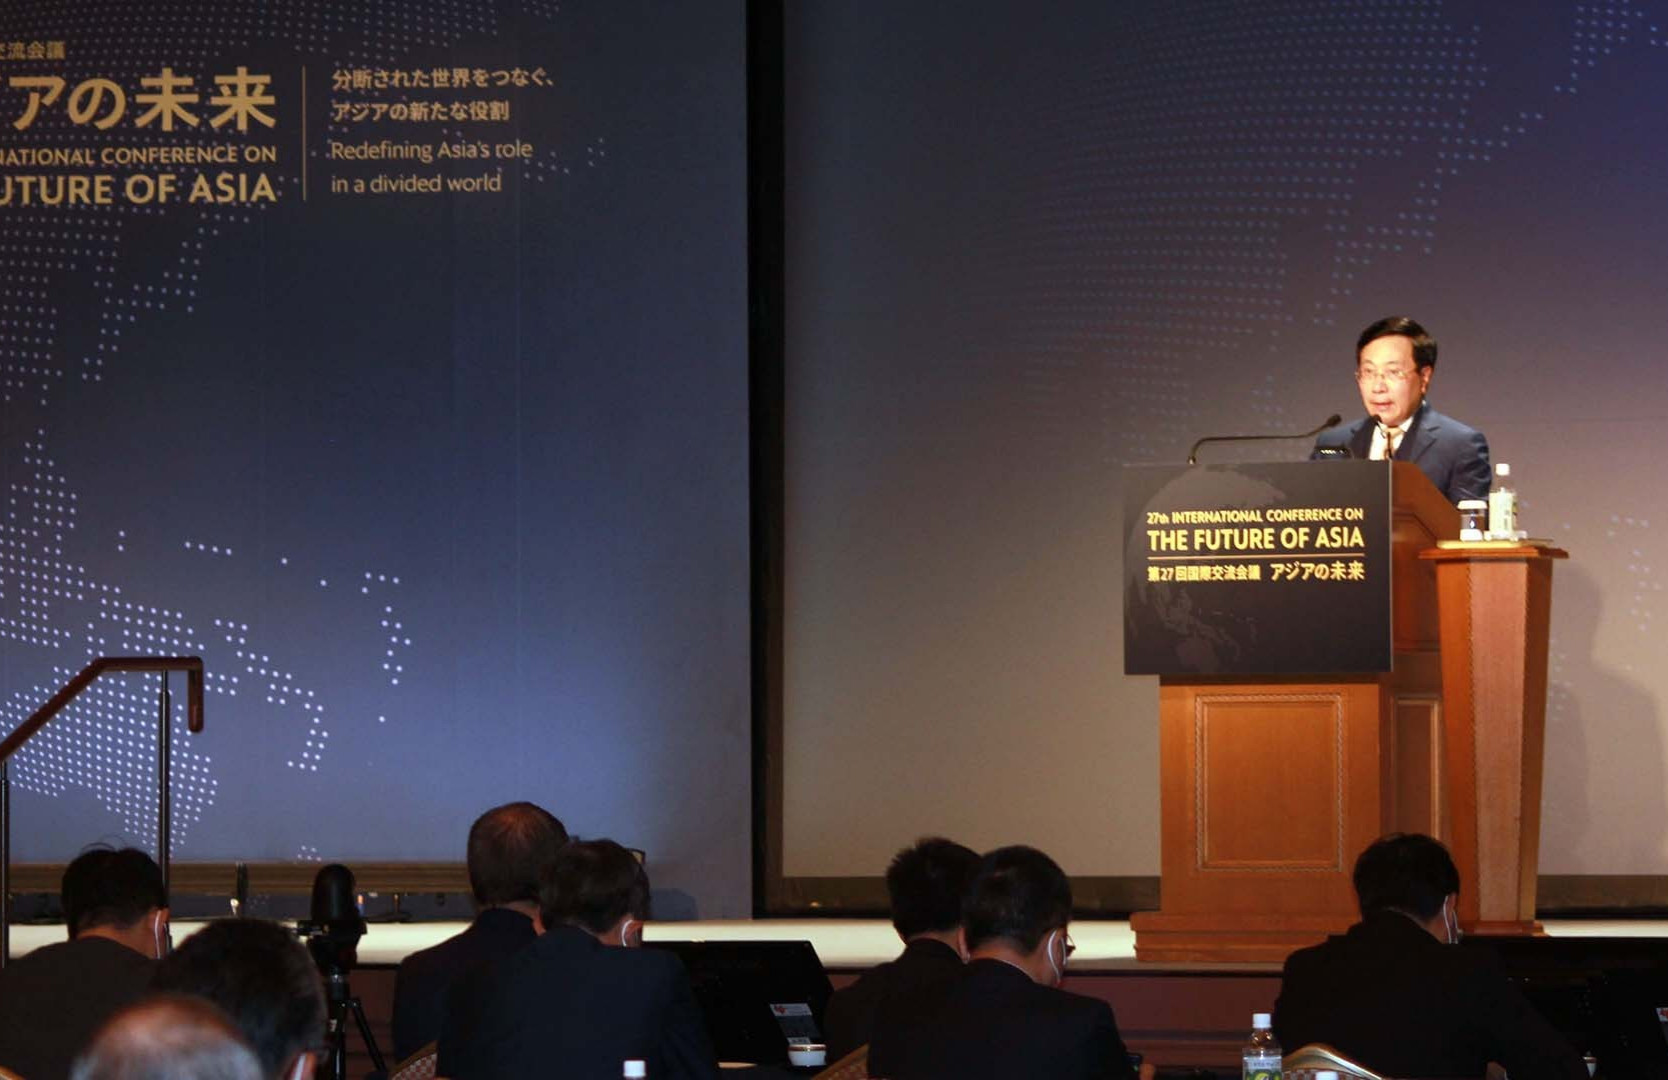 Phó Thủ tướng Thường trực Phạm Bình Minh tham dự và phát biểu tại Hội nghị Tương lai châu Á lần thứ 27